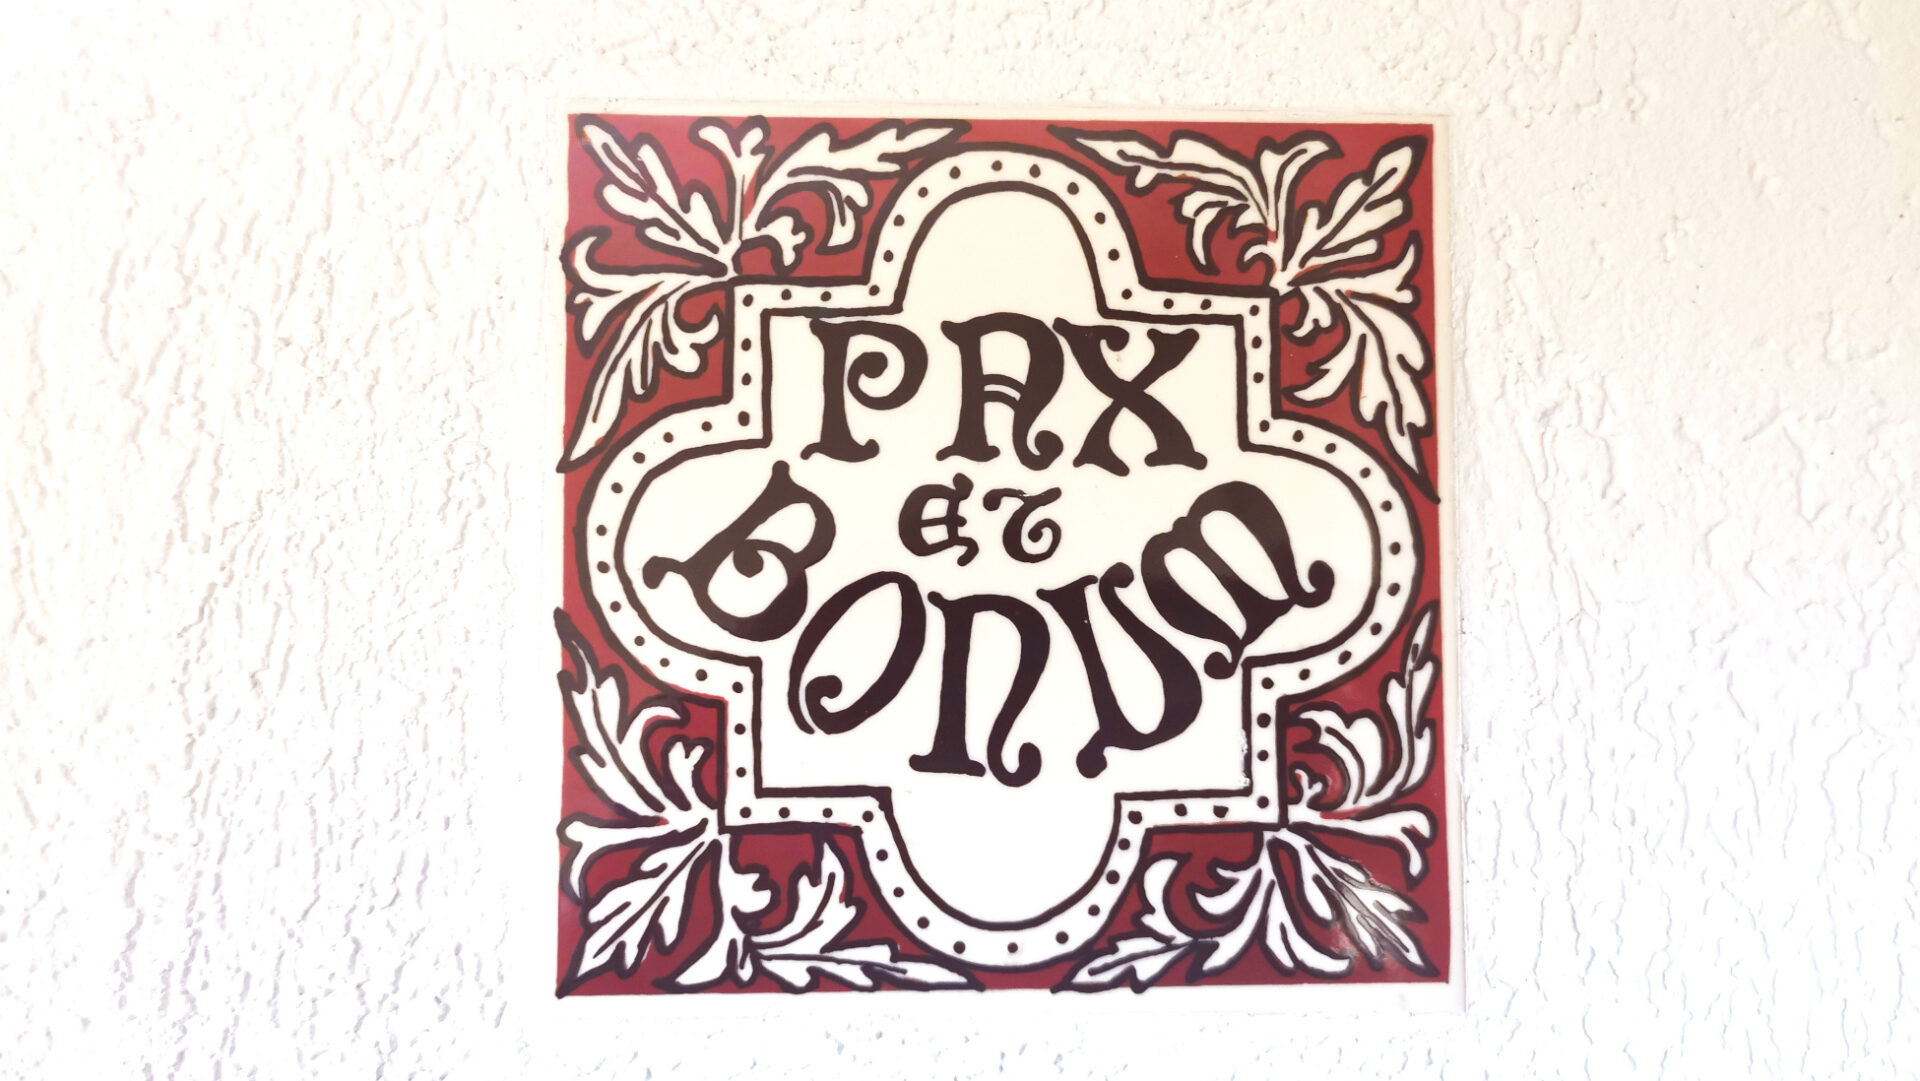 "Pax et bonum" bedeutet "Frieden und Wohlergehen". Dieses Motto prägt die Franziskaner und Kapuziner.